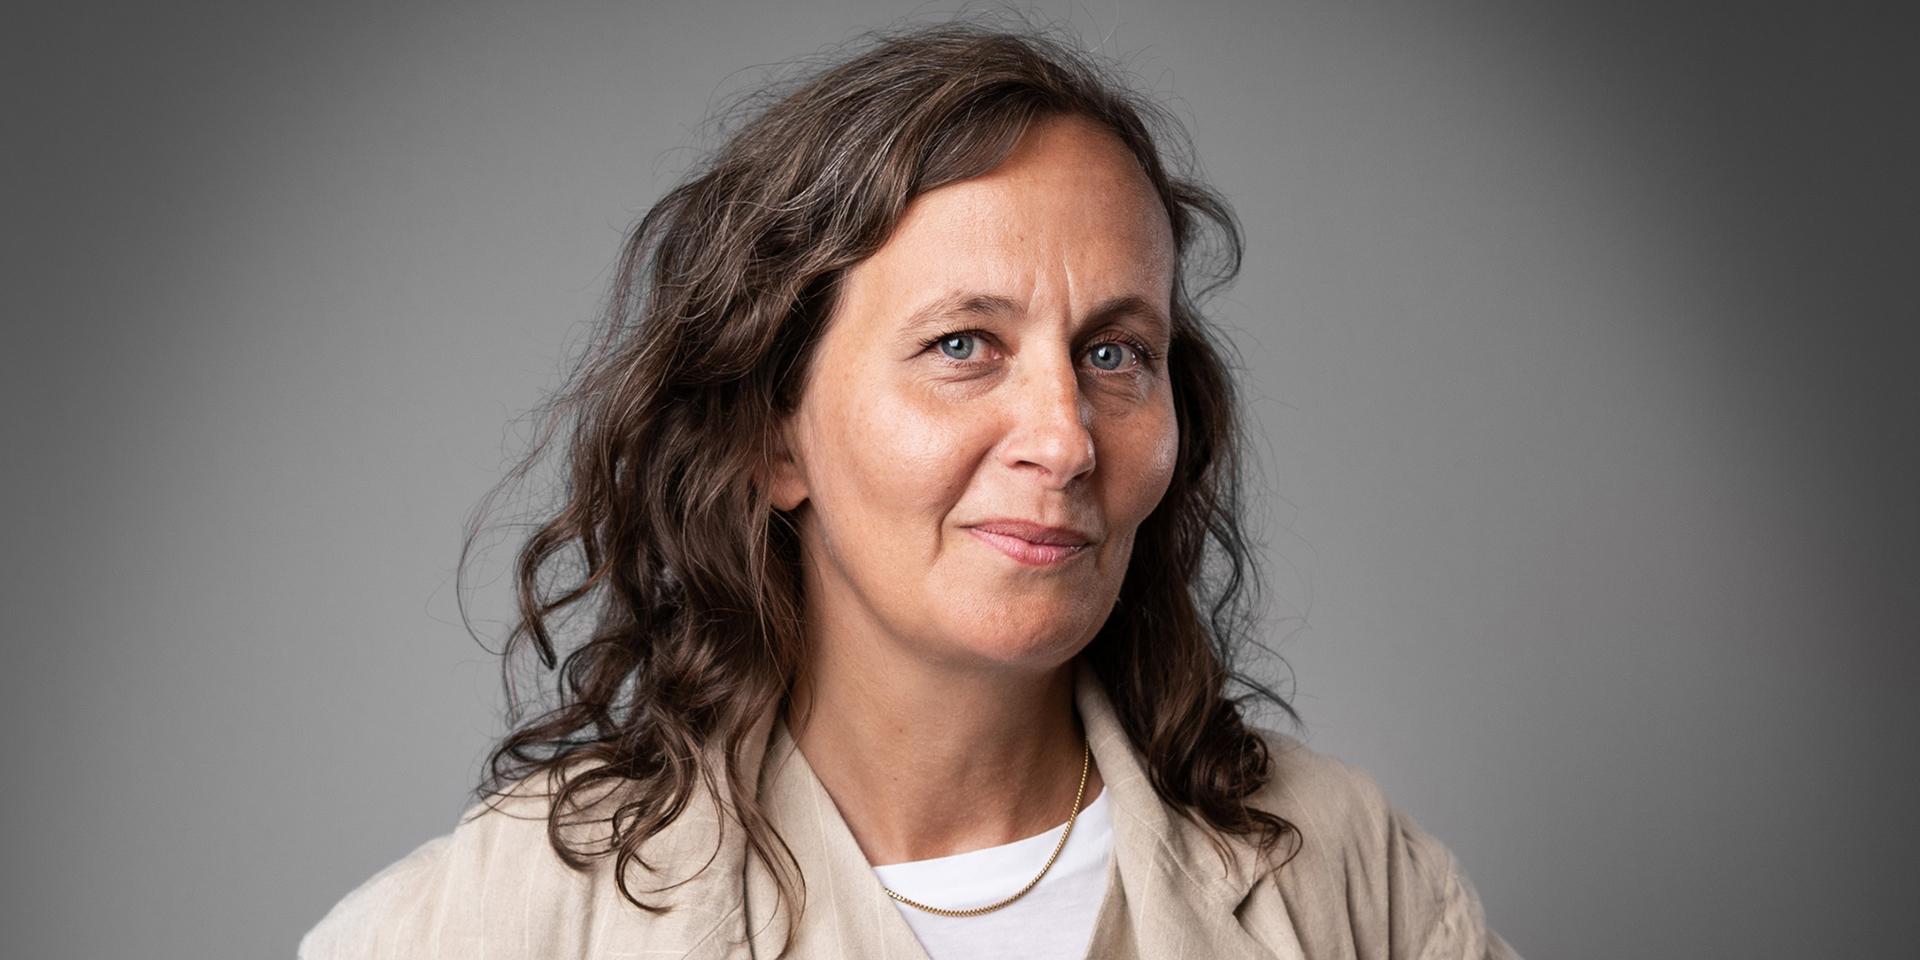 Nanna Gillberg är forskare på Handelshögskolan vid Göteborgs universitet. Hon arbetar med digitalisering, jämställdhet och det gränslösa arbetslivet.